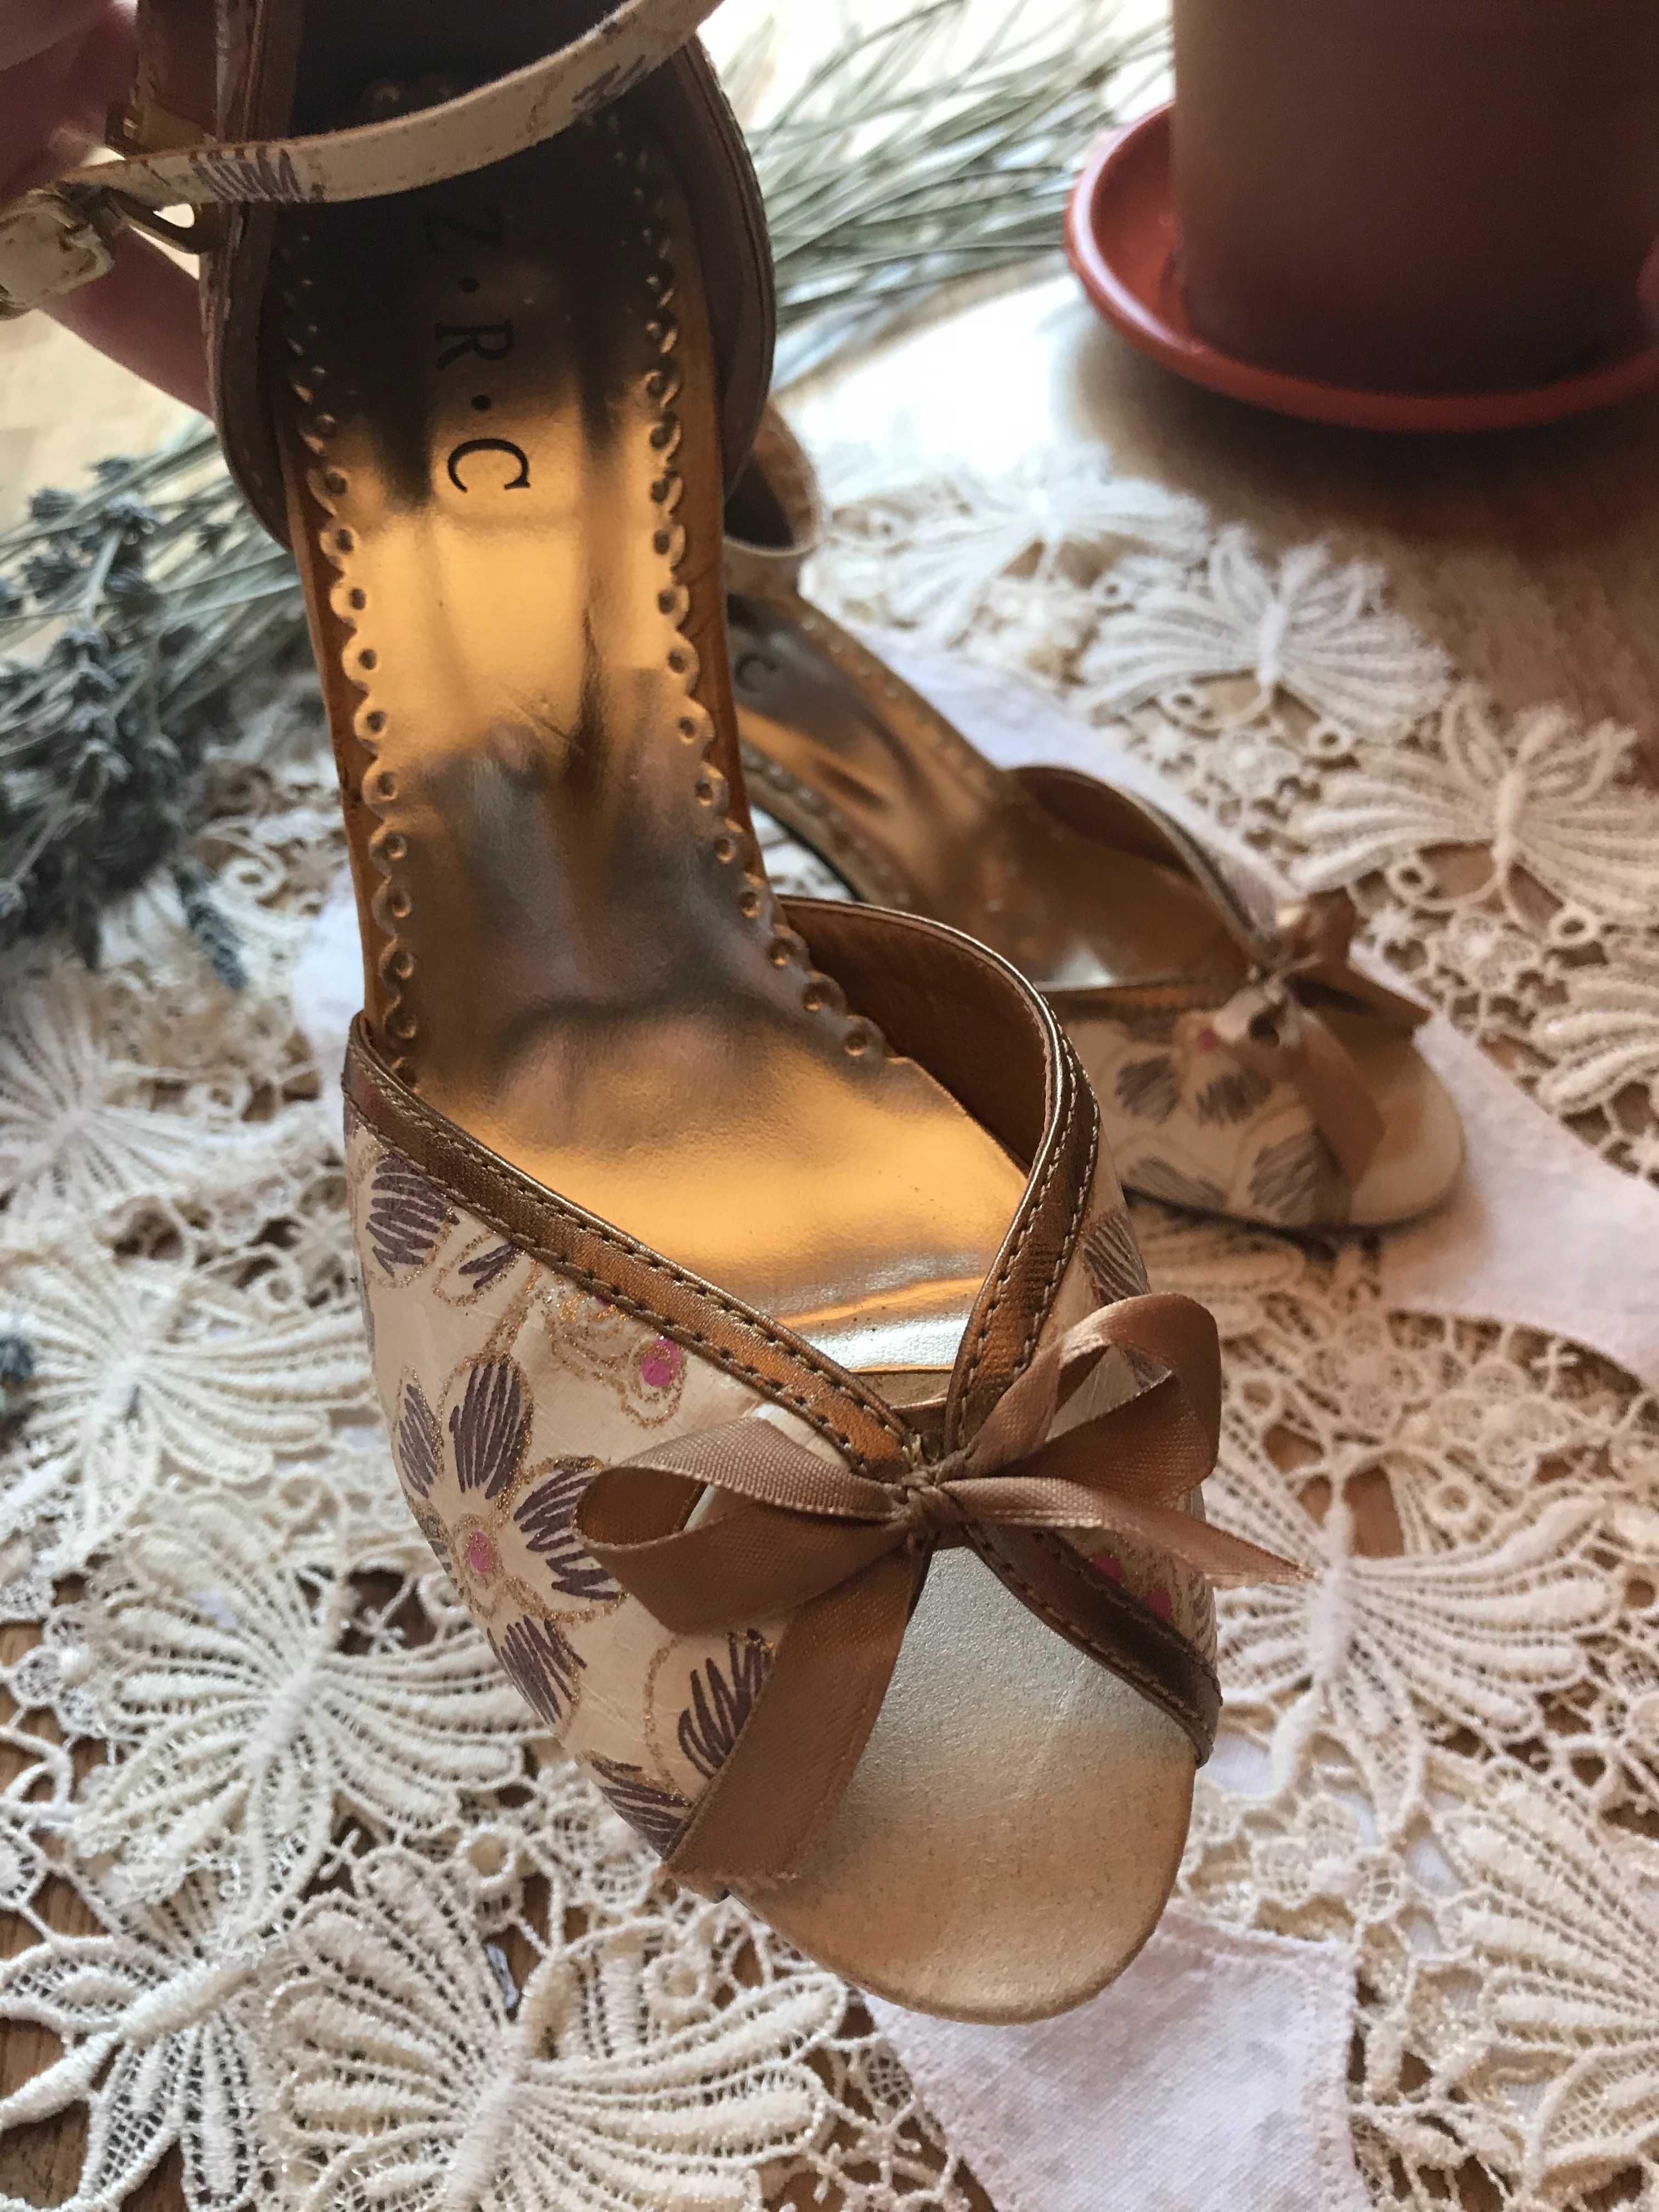 Sapatos Creme e Dourados/Padrão Floral (Casamento e Festas) TAM 36/37